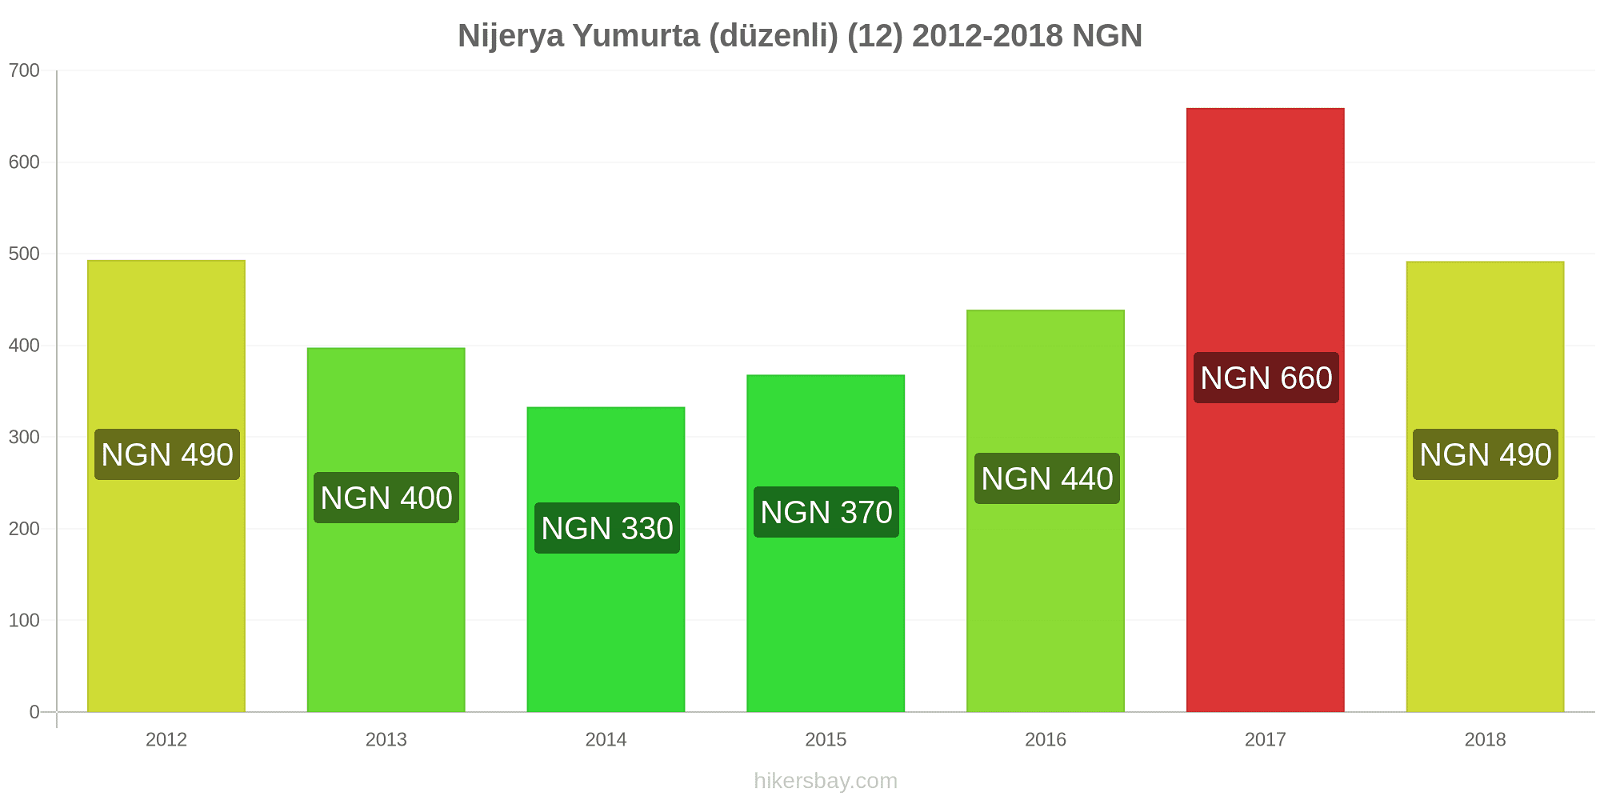 Nijerya fiyat değişiklikleri Yumurta (normal) (12) hikersbay.com